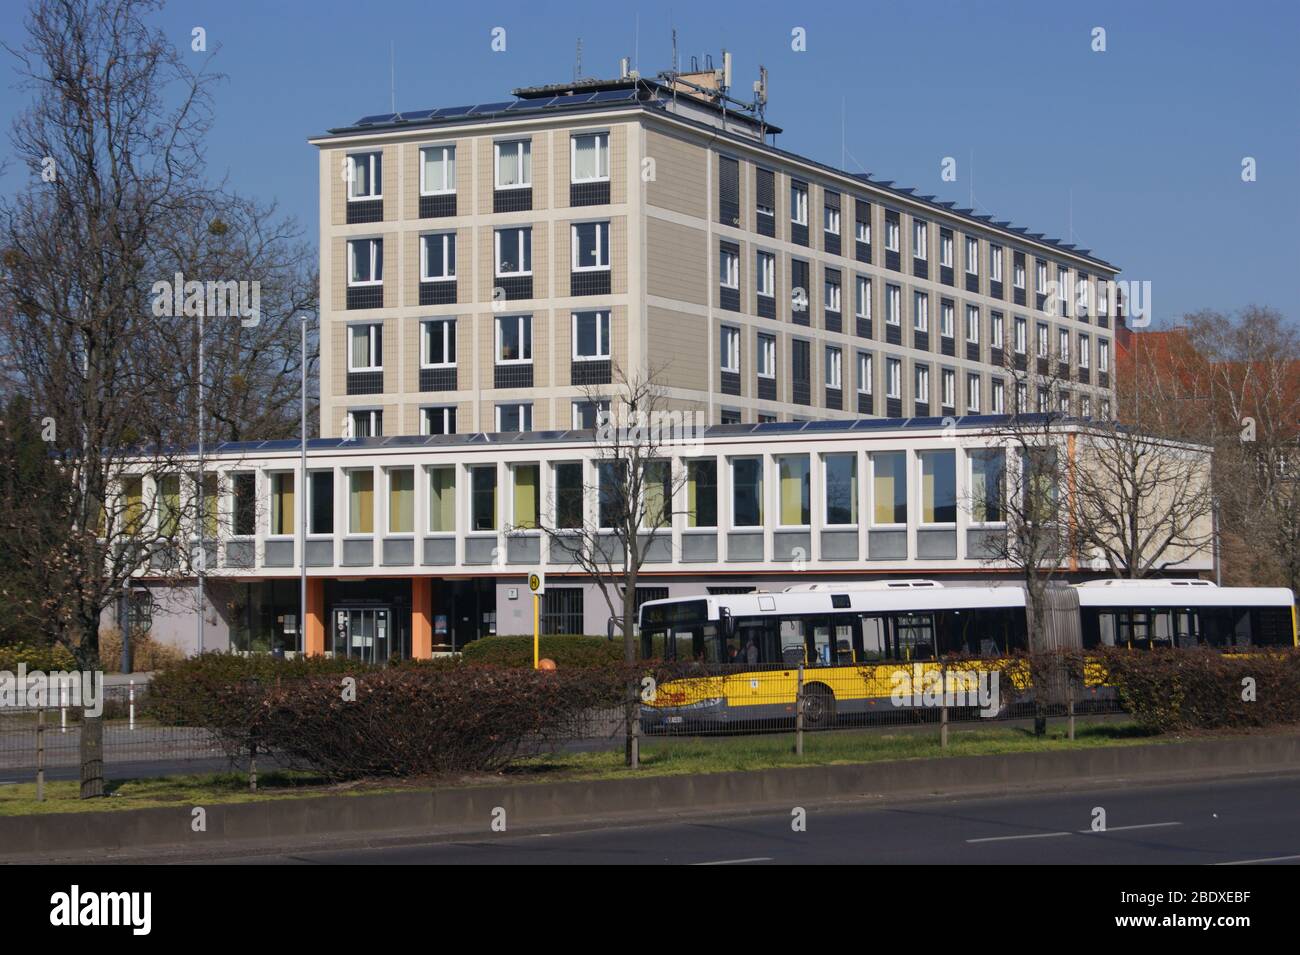 Das Amtsgericht Spandau, gebaut von 1953 bis 1954, am Altstädter Ring, in der Nähe des Rathaus' Spandau. Stock Photo